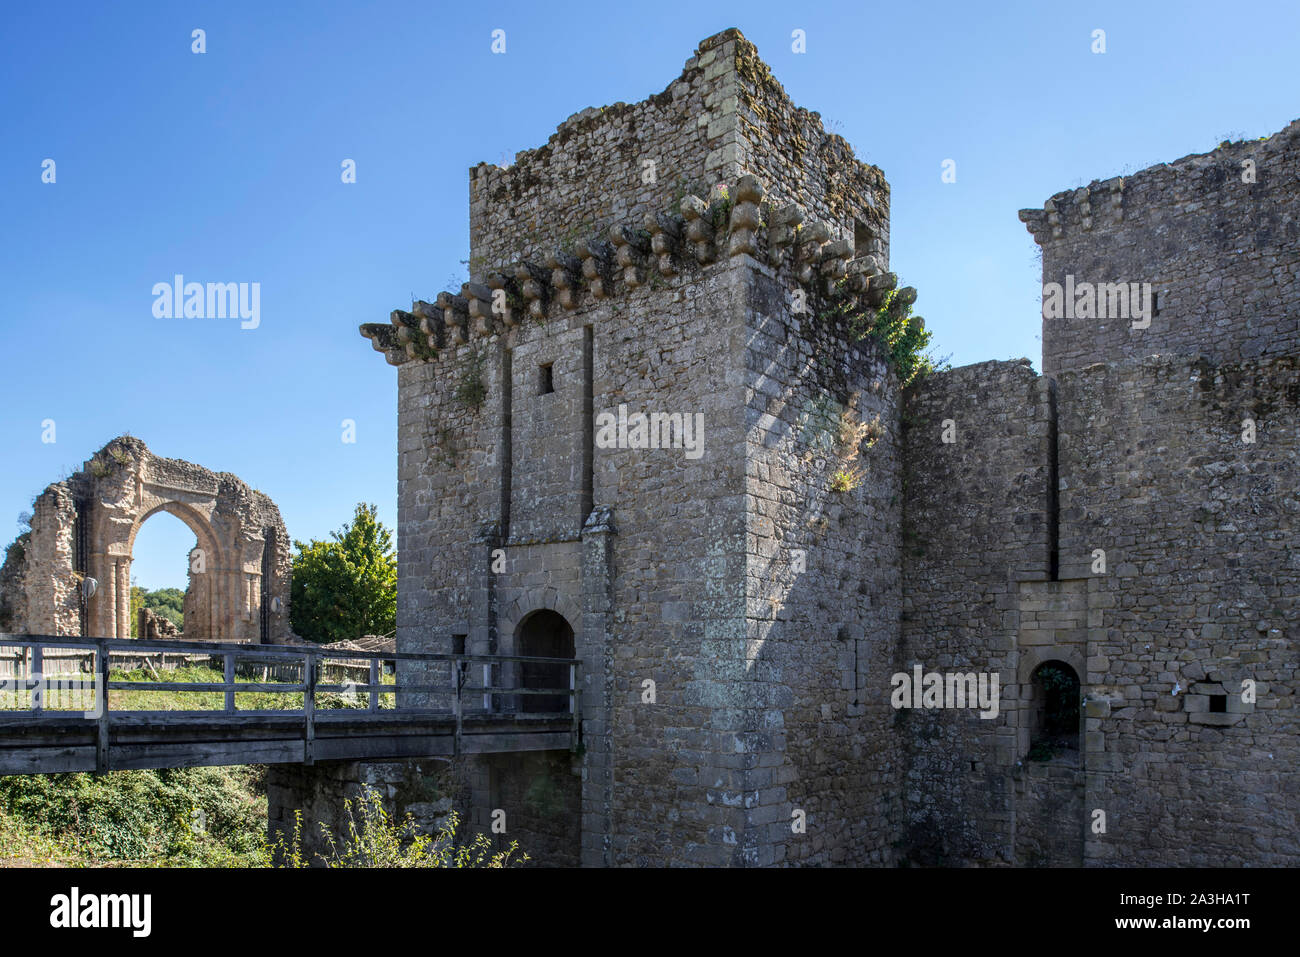 Ruins of the medieval Château de Tiffauges, also known as the château de Barbe-bleue / Bluebeard's castle, Vendée, France Stock Photo